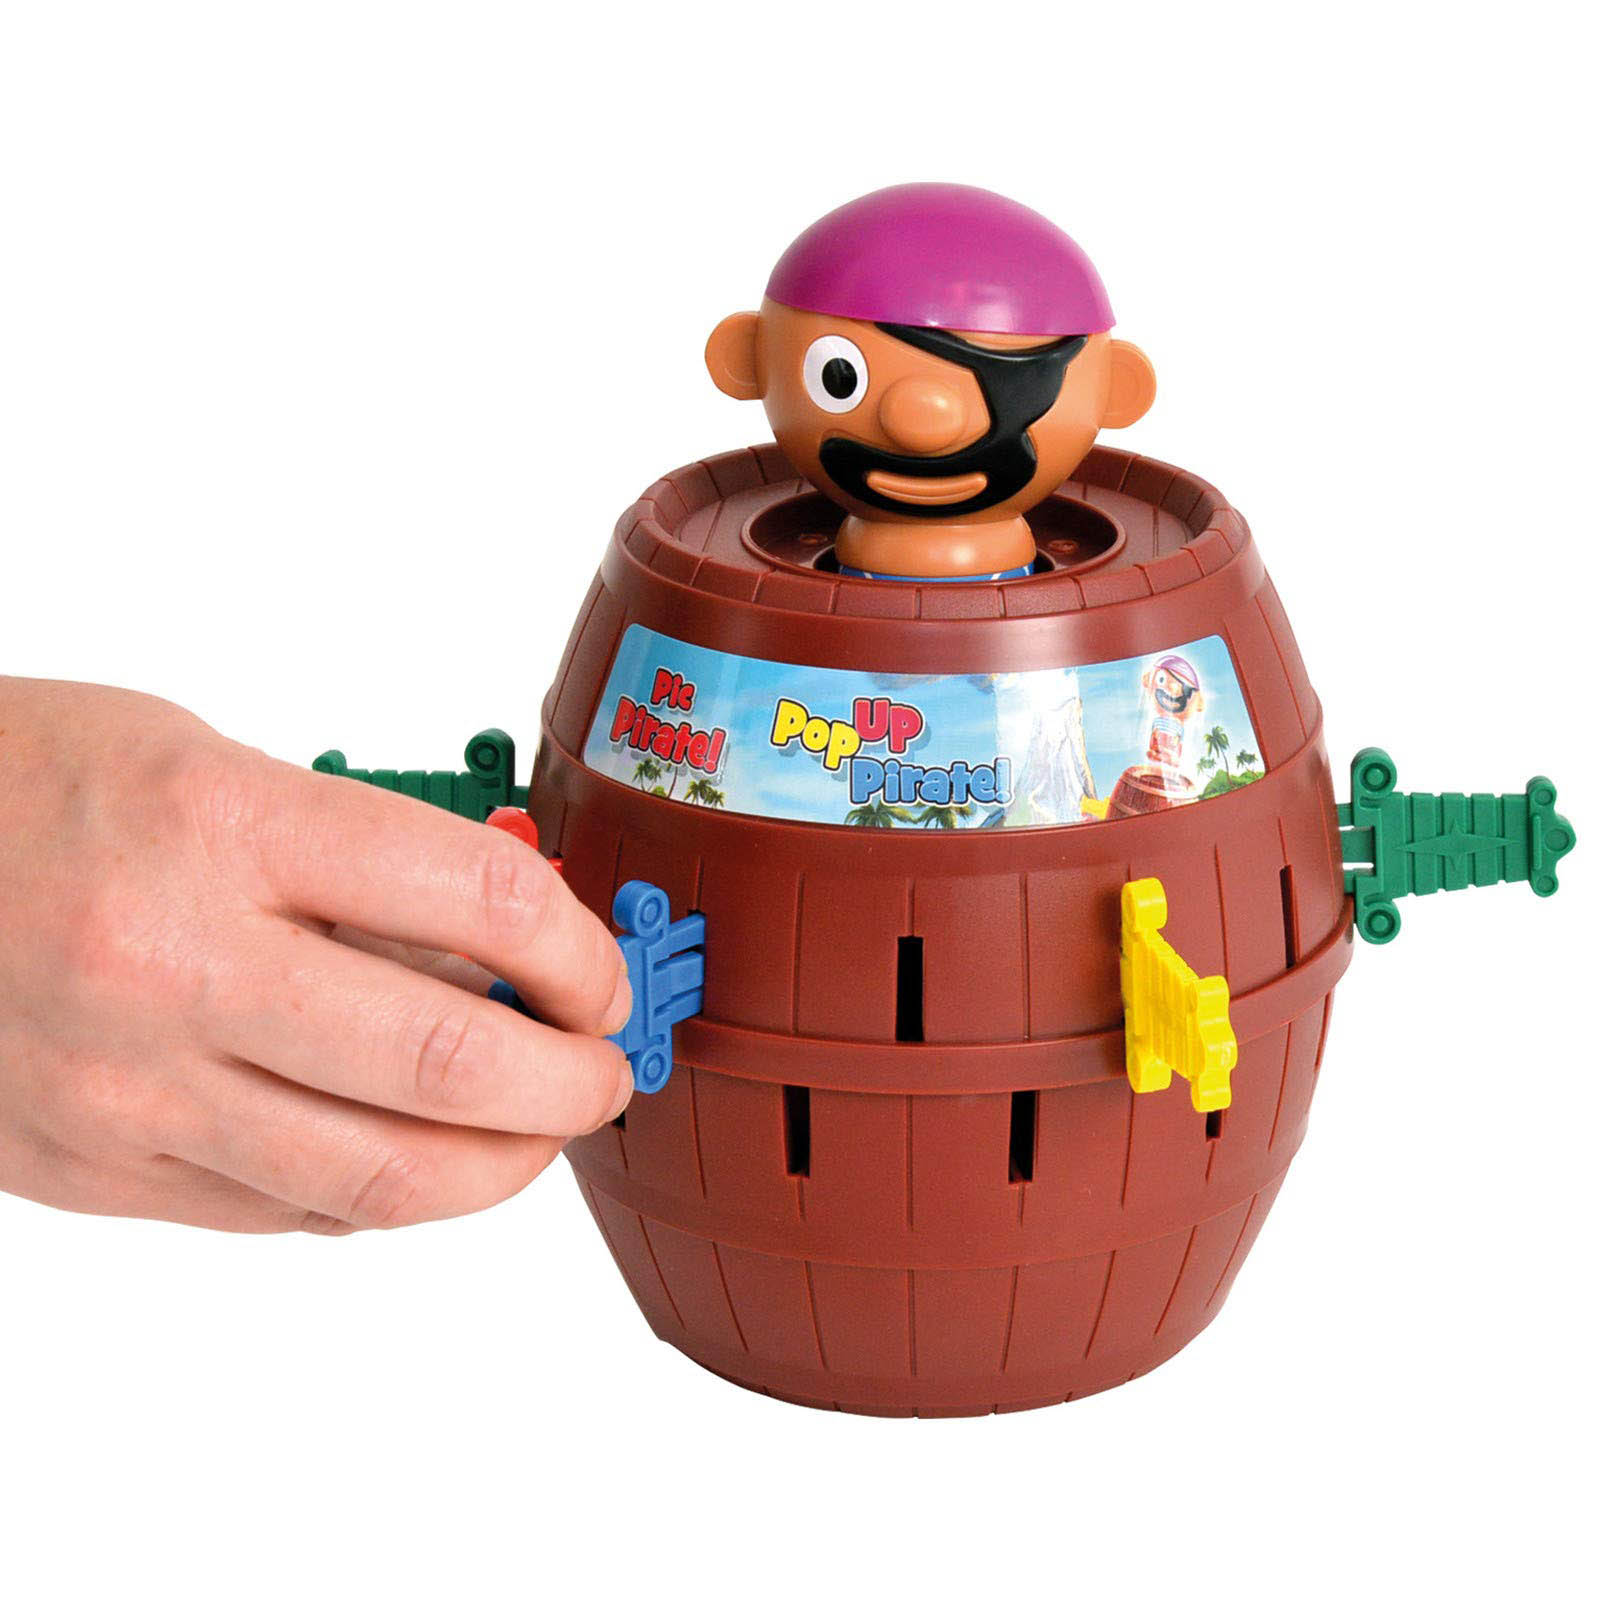 Bộ trò chơi phóng Cướp Biển Popup Pirate hàng Tomy dành cho 2-4 người chơi